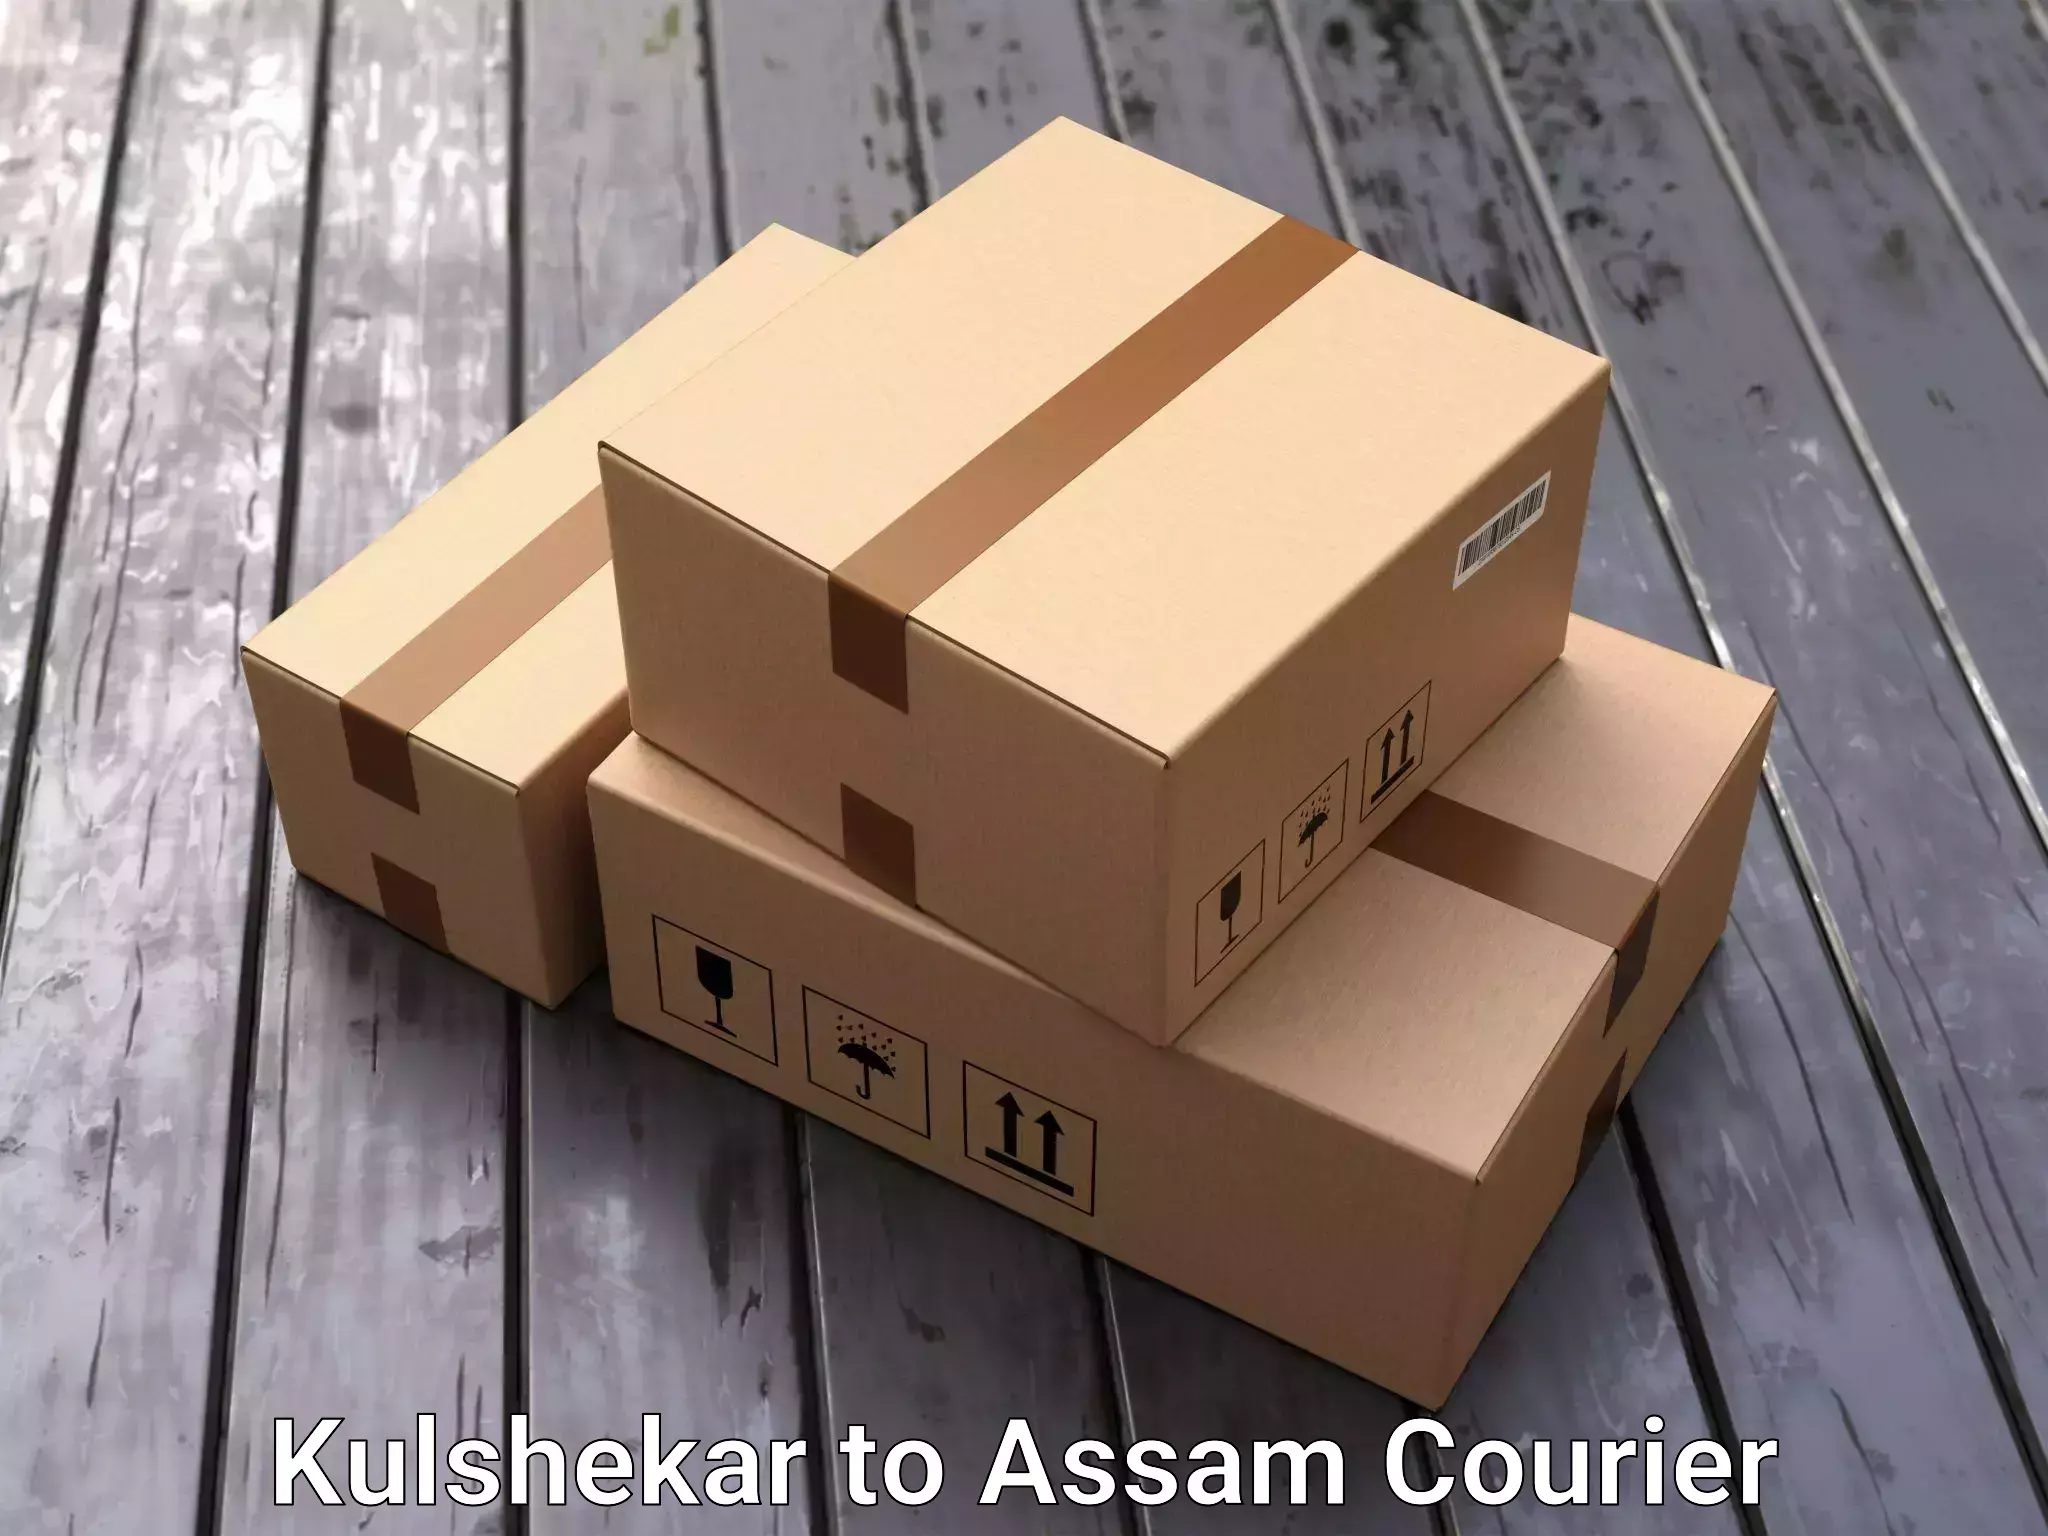 Furniture movers and packers Kulshekar to Tinsukia